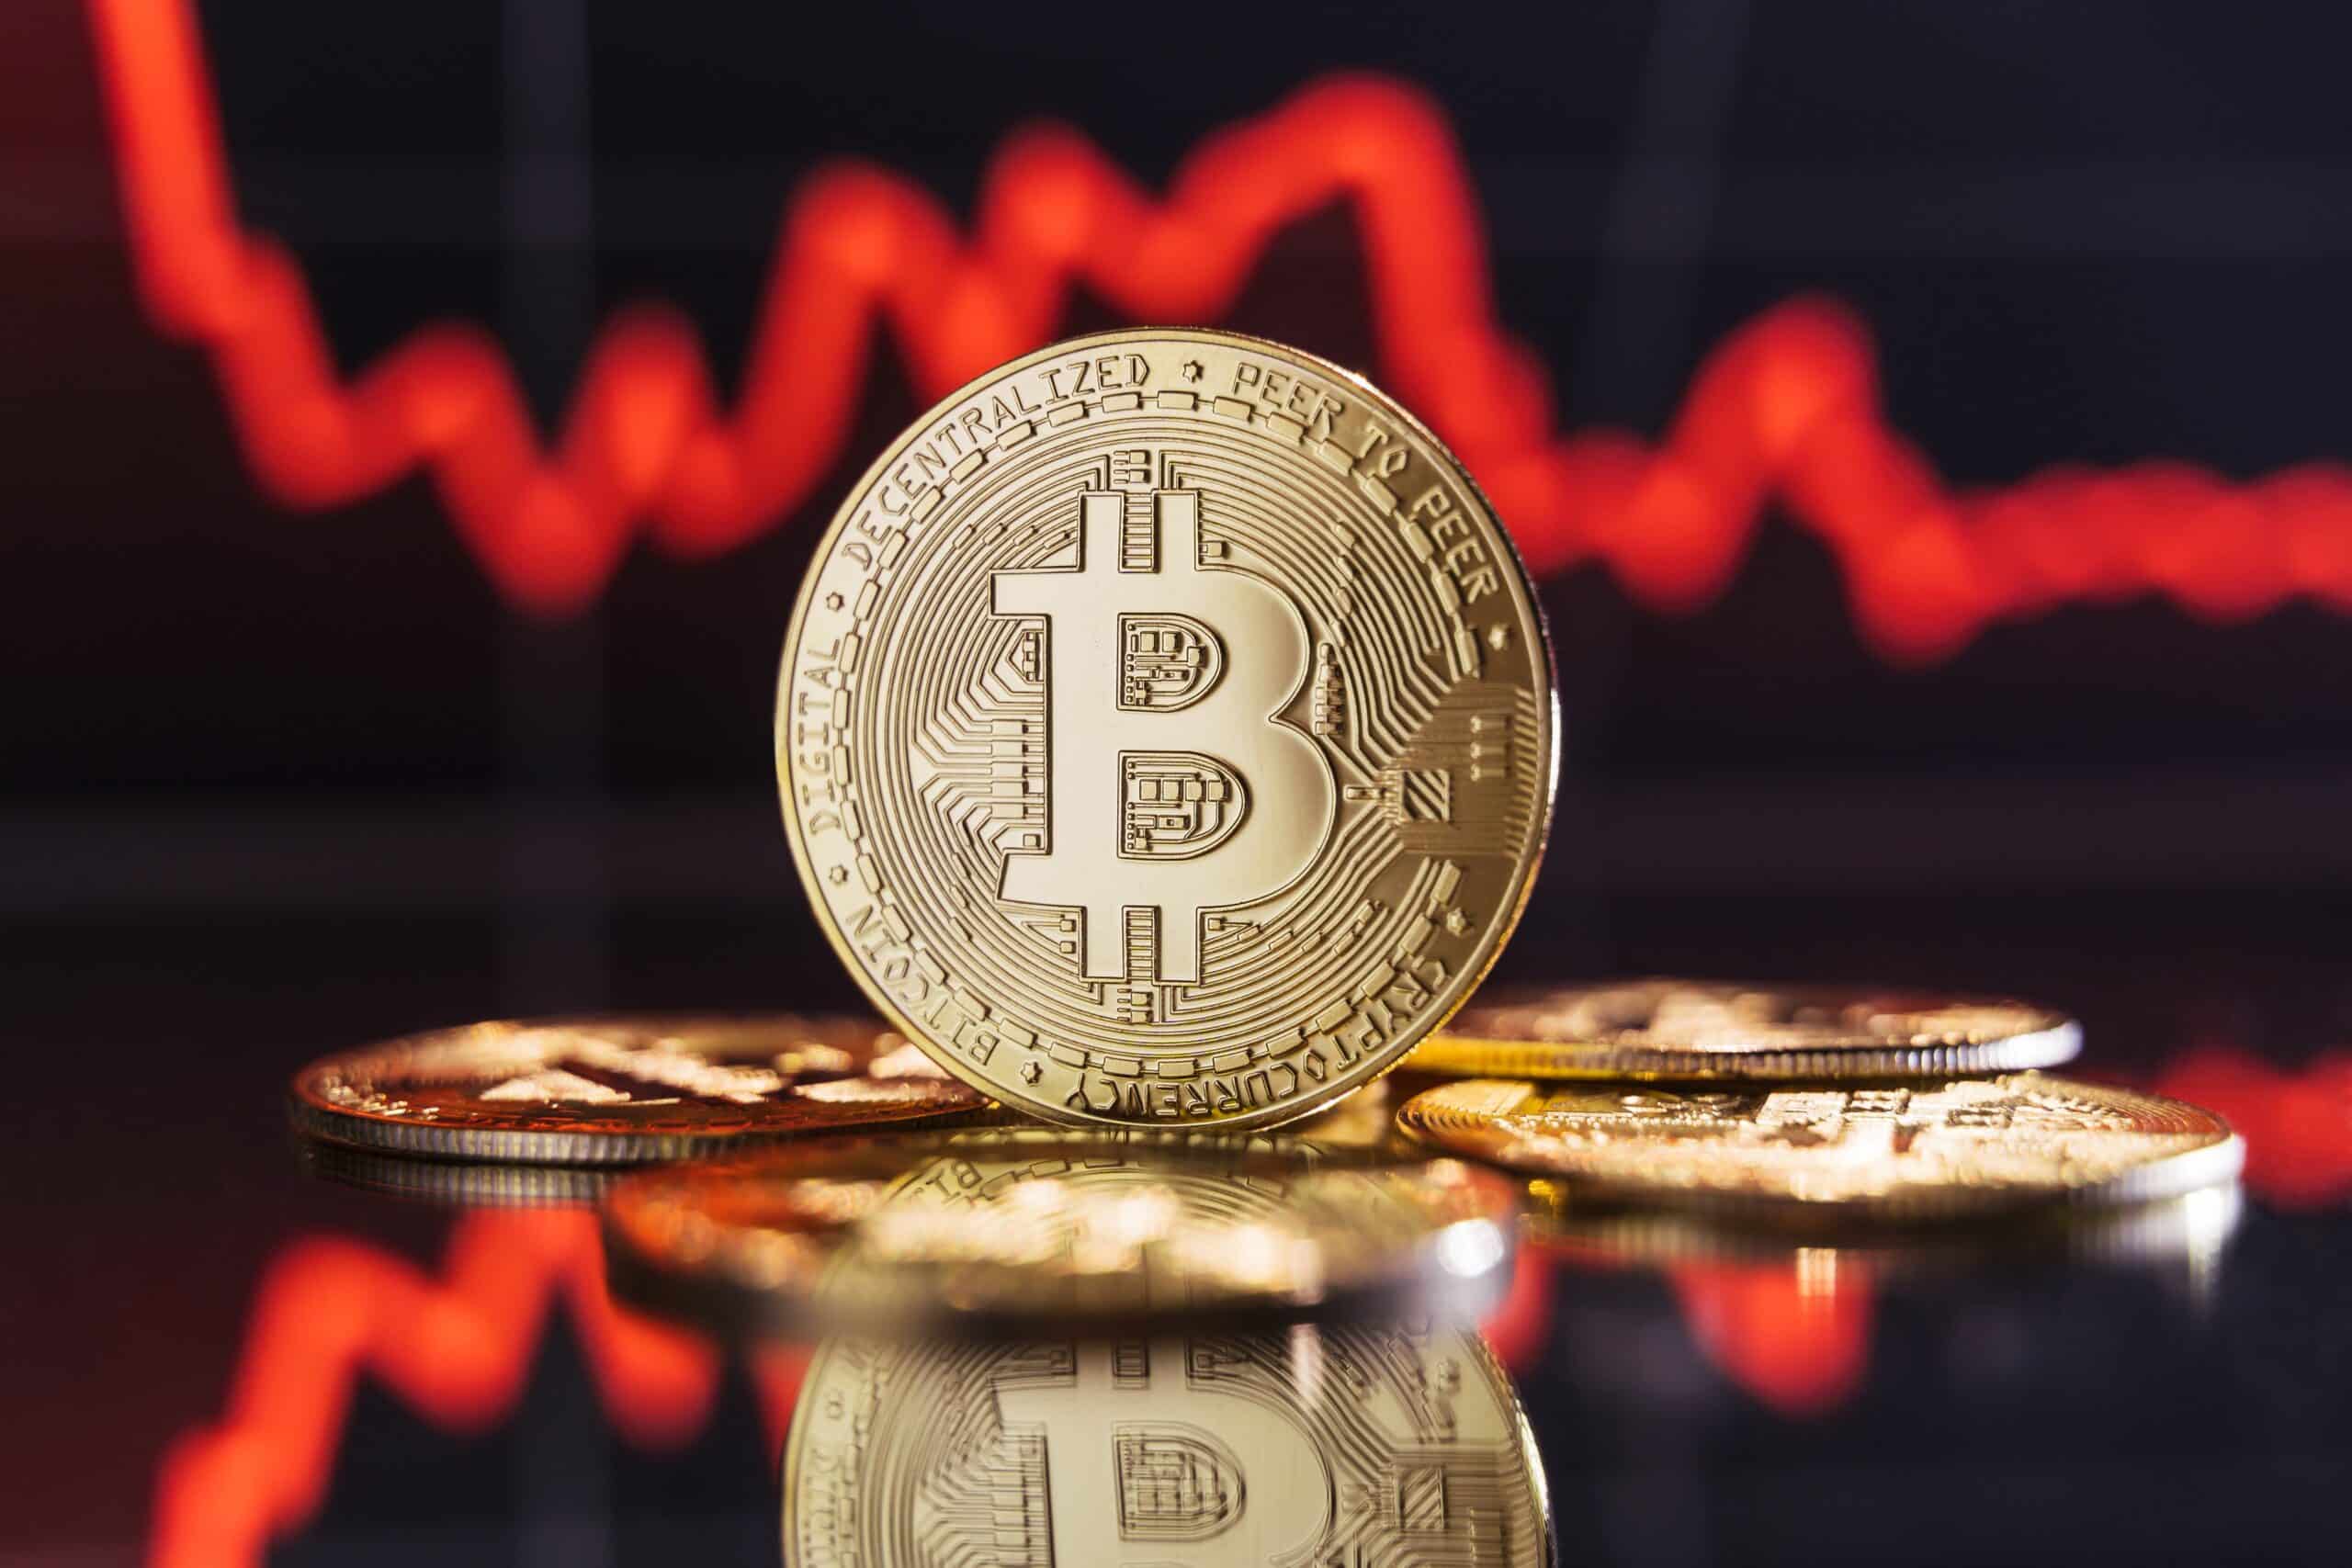 Wygląda na to, że górnicy sprzedali bitcoiny sprzed dziesięciu lat o wartości 69 milionów dolarów – bez łańcuchów